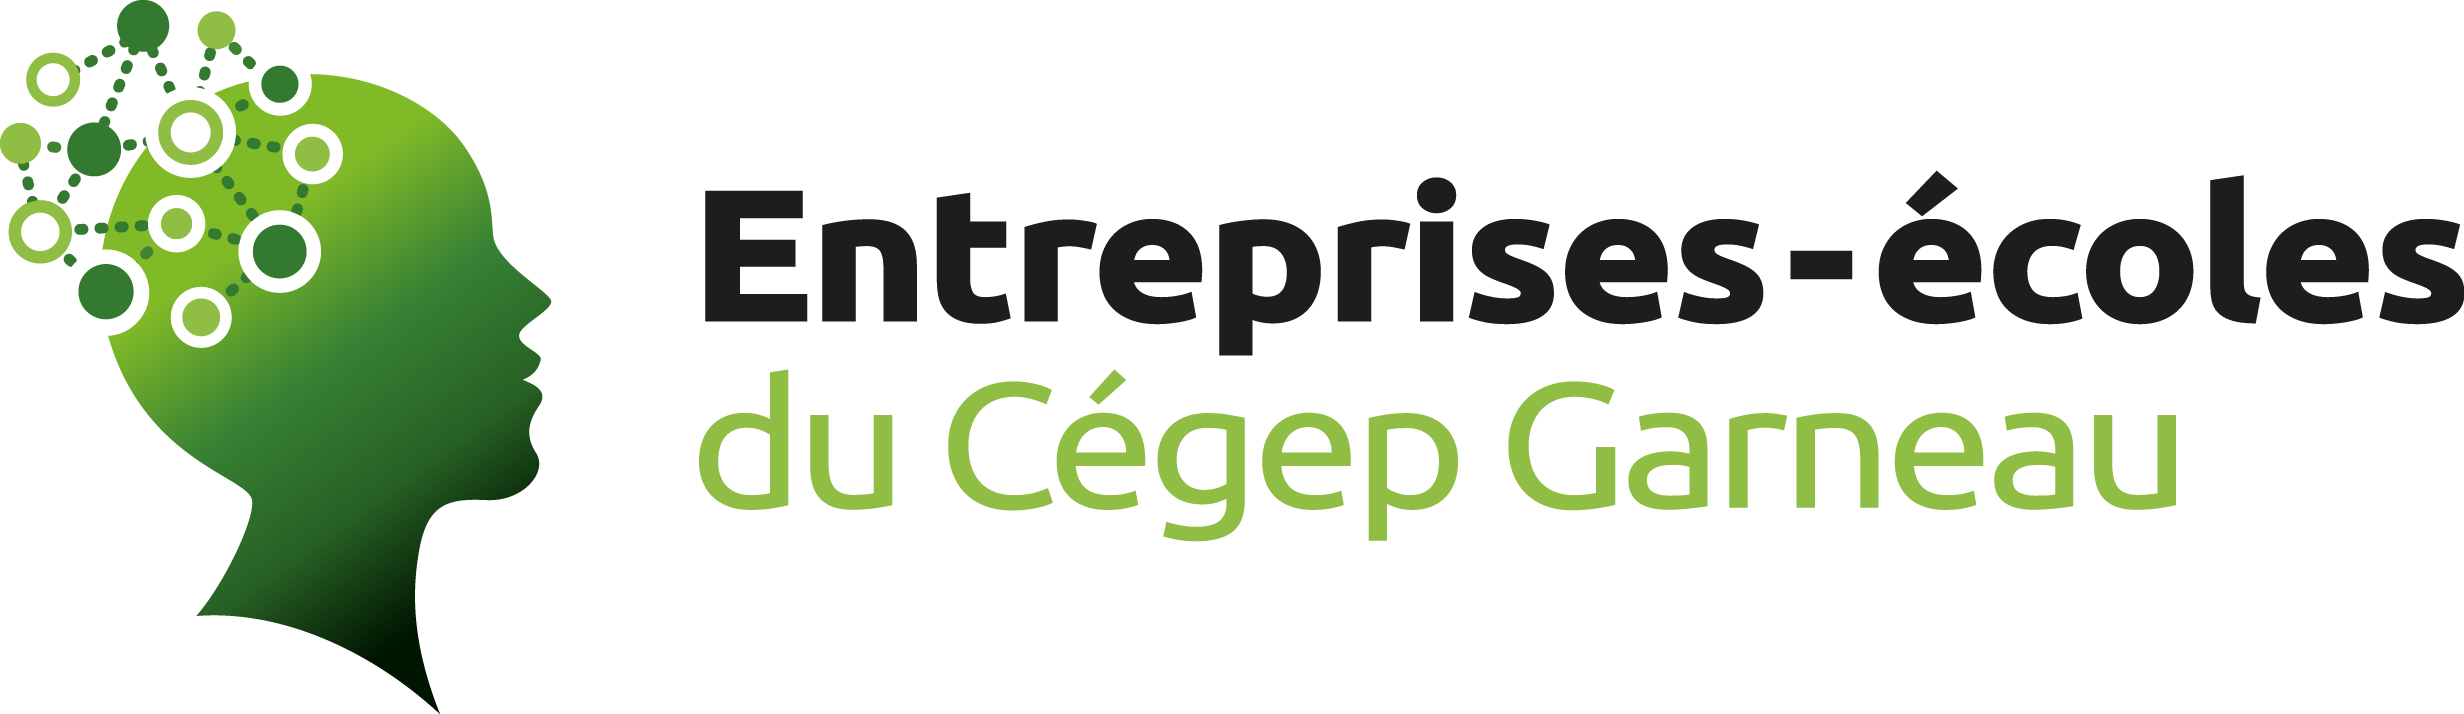 Logo des entreprises-écoles du Cégep Garneau